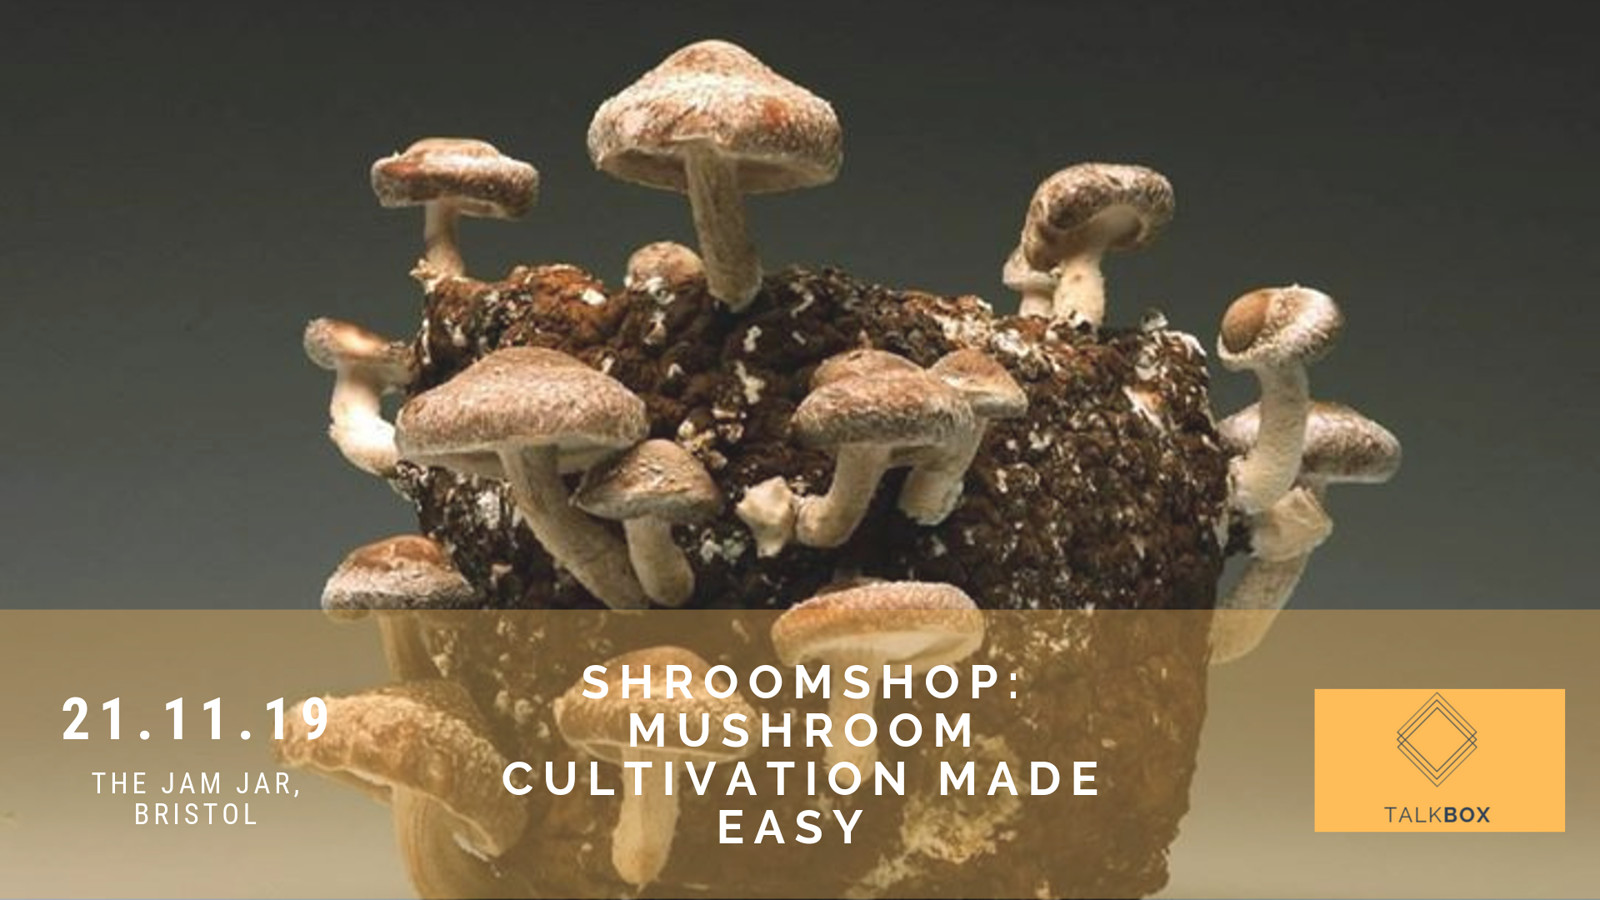 Shroomshop: Mushroom Cultivation Made Easy at Jam Jar